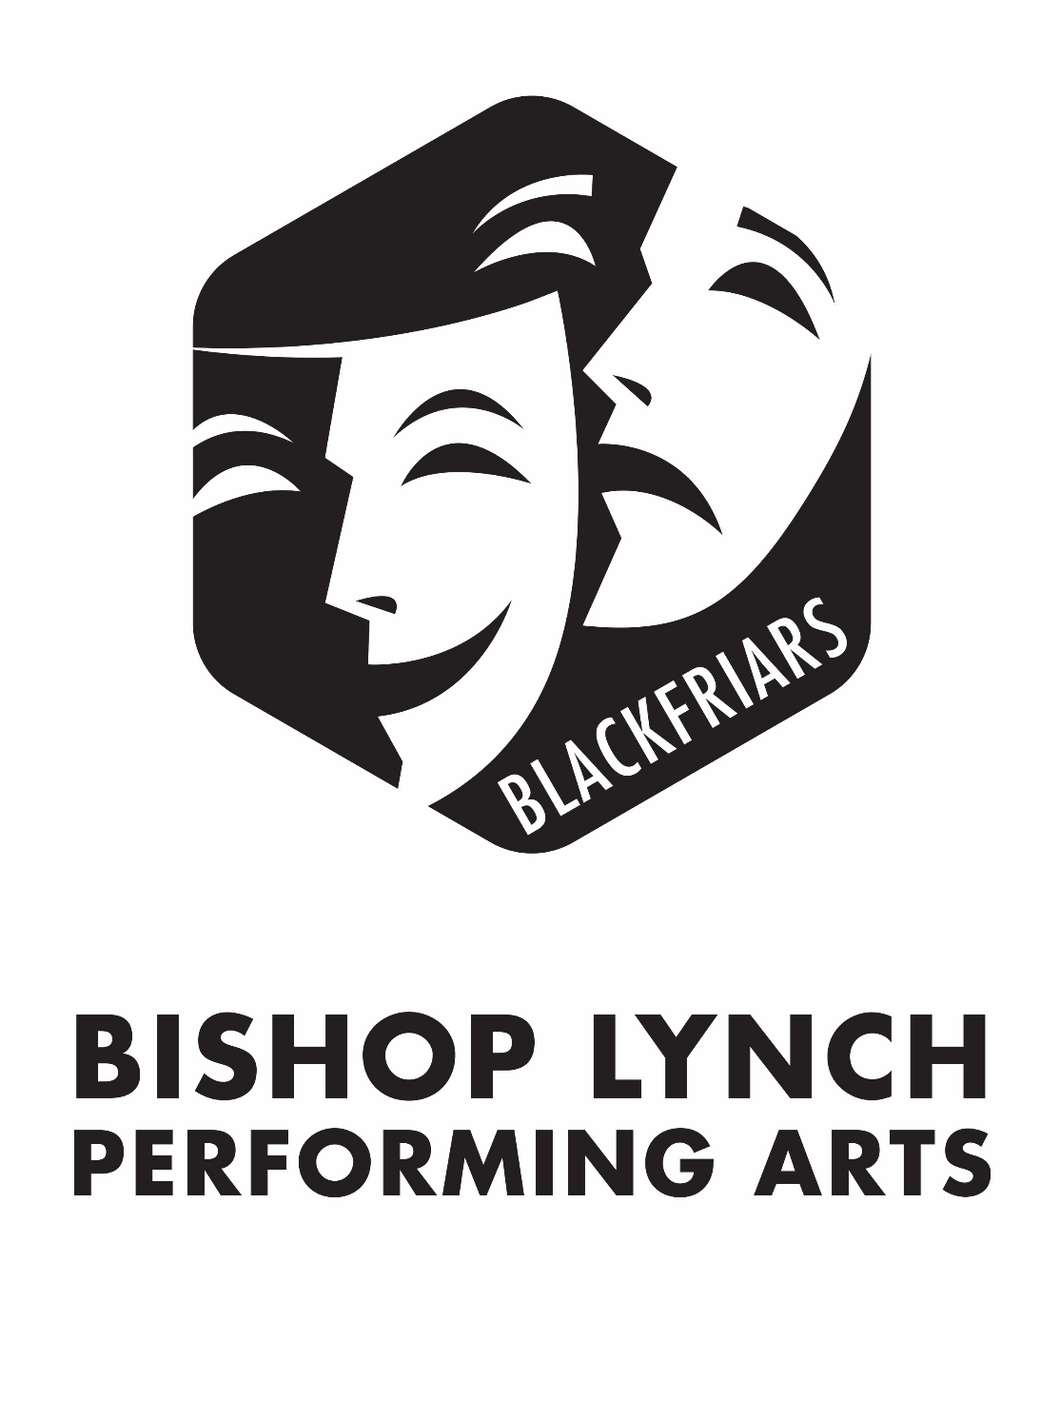 Yard Sign - Blackfriars (Performing Arts)